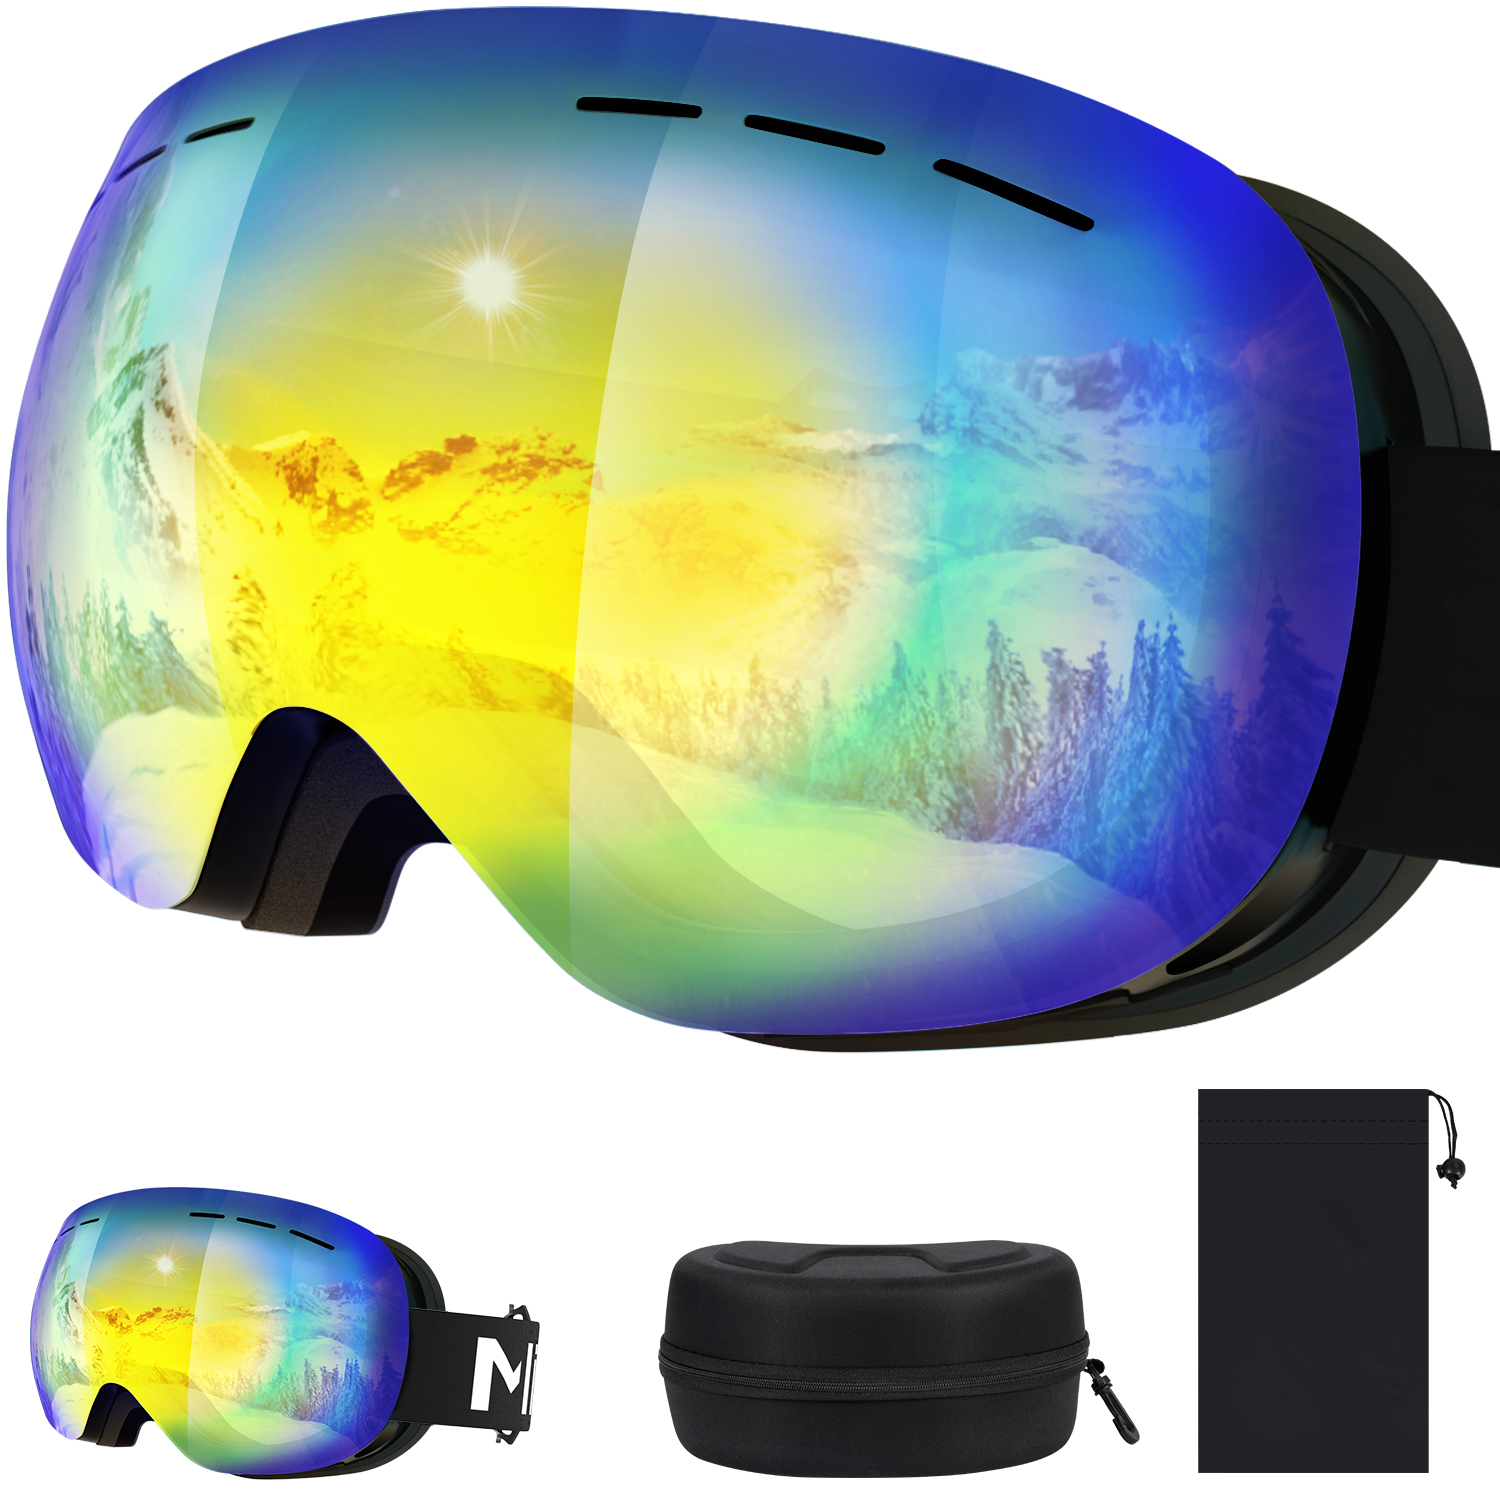 日和スキーゴーグル Mixiu 球面レンズ ヘルメット対応 UV400保護 フレームレス スノーゴーグル 男女兼用 メガネ着用可 紫外線99%カット  広角視野 防曇